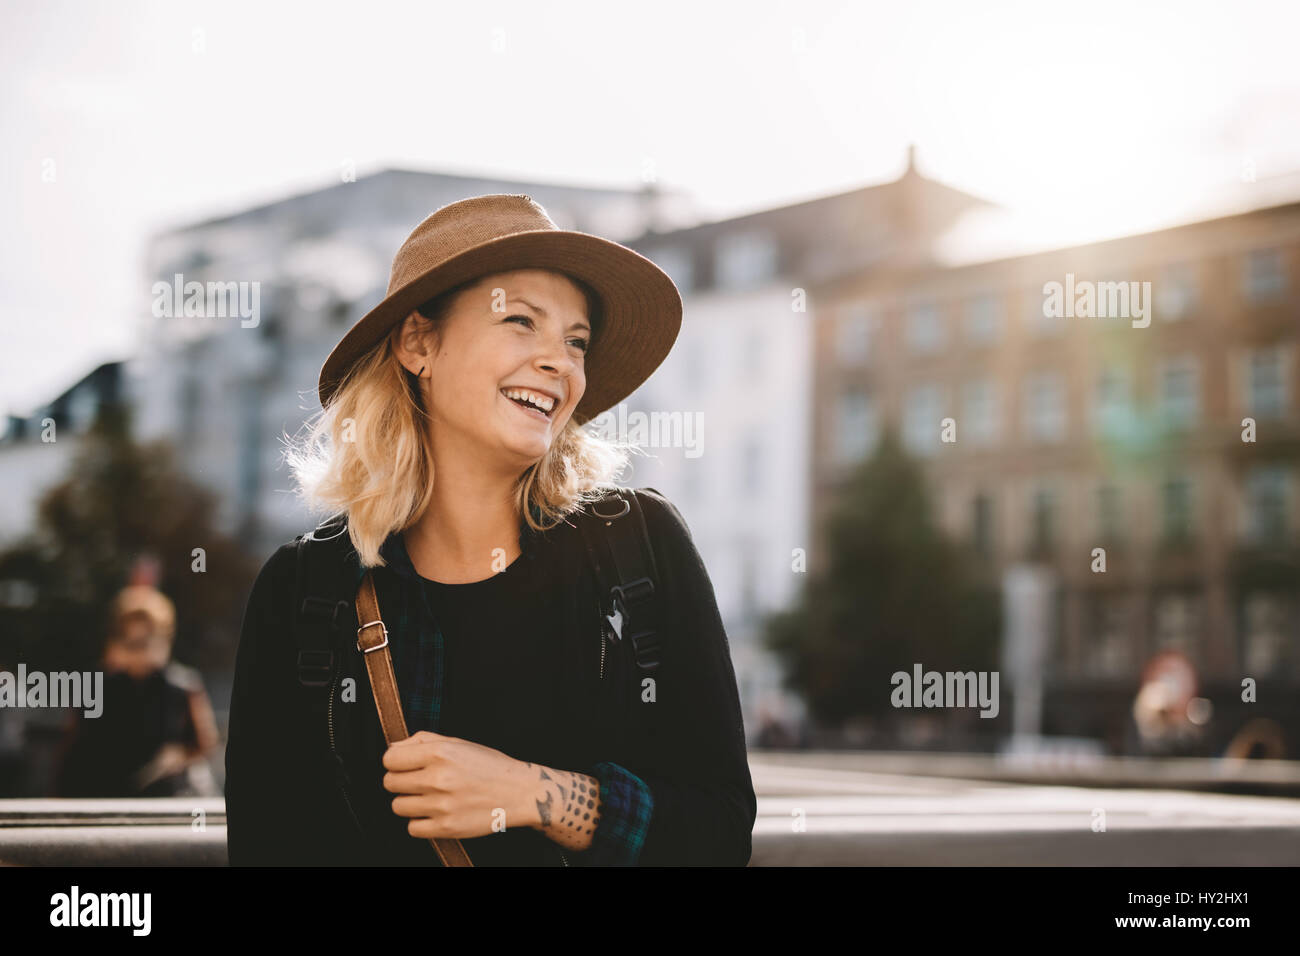 Lächelnde junge Frau an einem Feiertag. Tourist-Frau mit einer Tasche, einen Hut auf einen Urlaub. Stockfoto